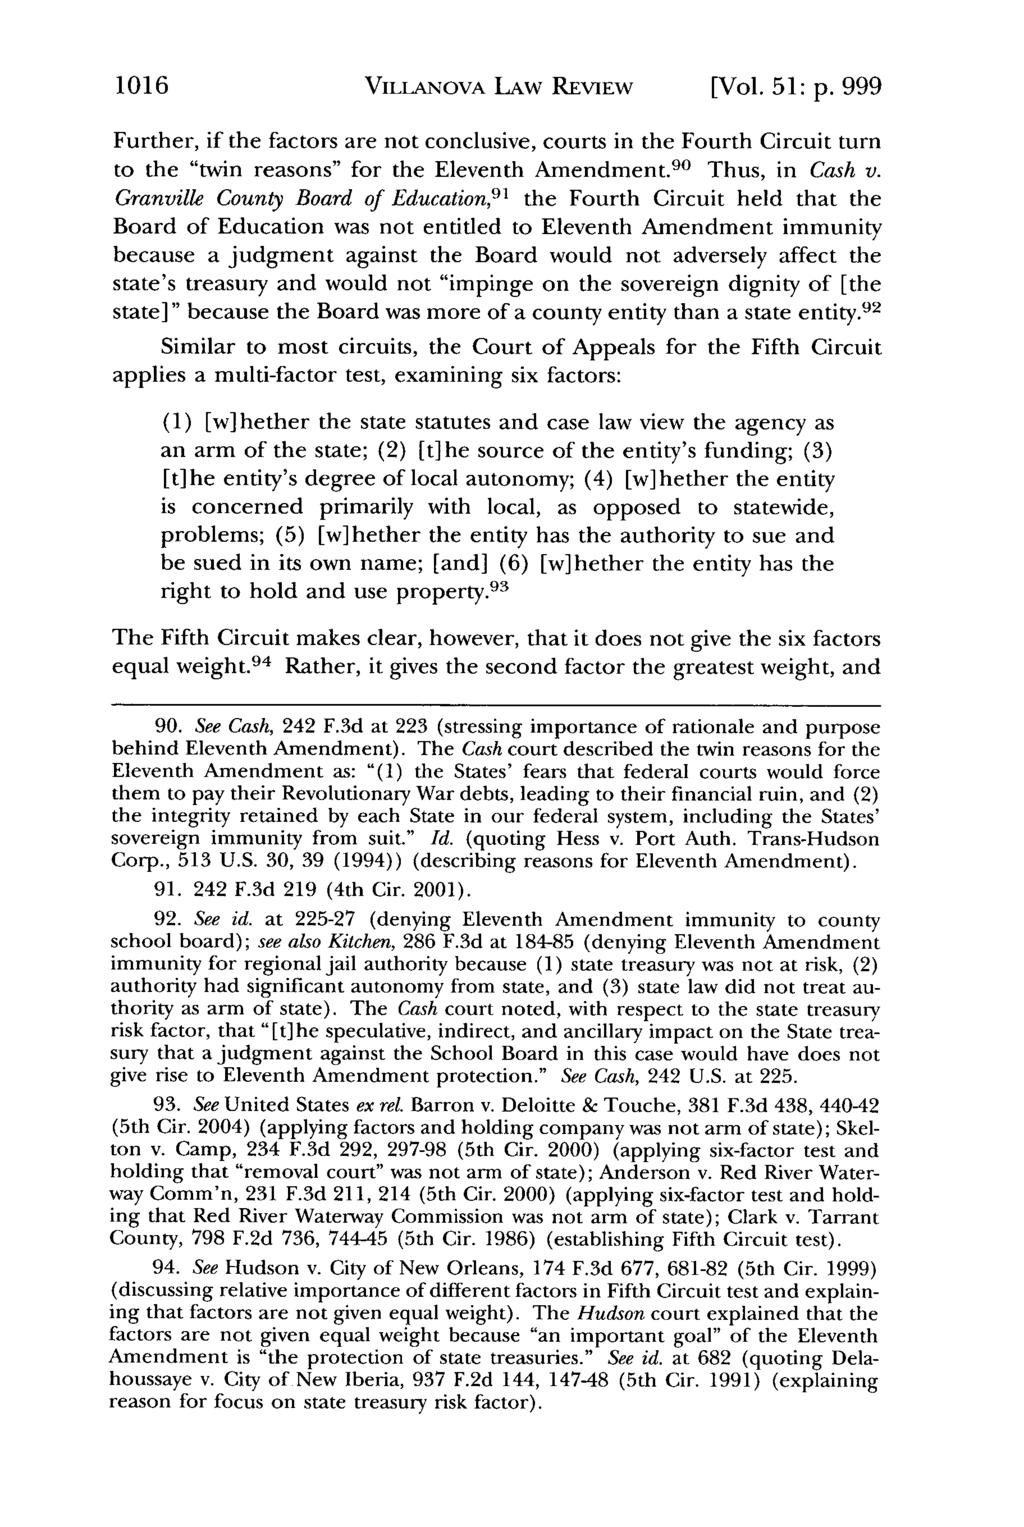 1016 Villanova Law Review, Vol. 51, Iss. 5 [2006], Art. 2 VILLANOVA LAW REVIEW [Vol. 51: p.